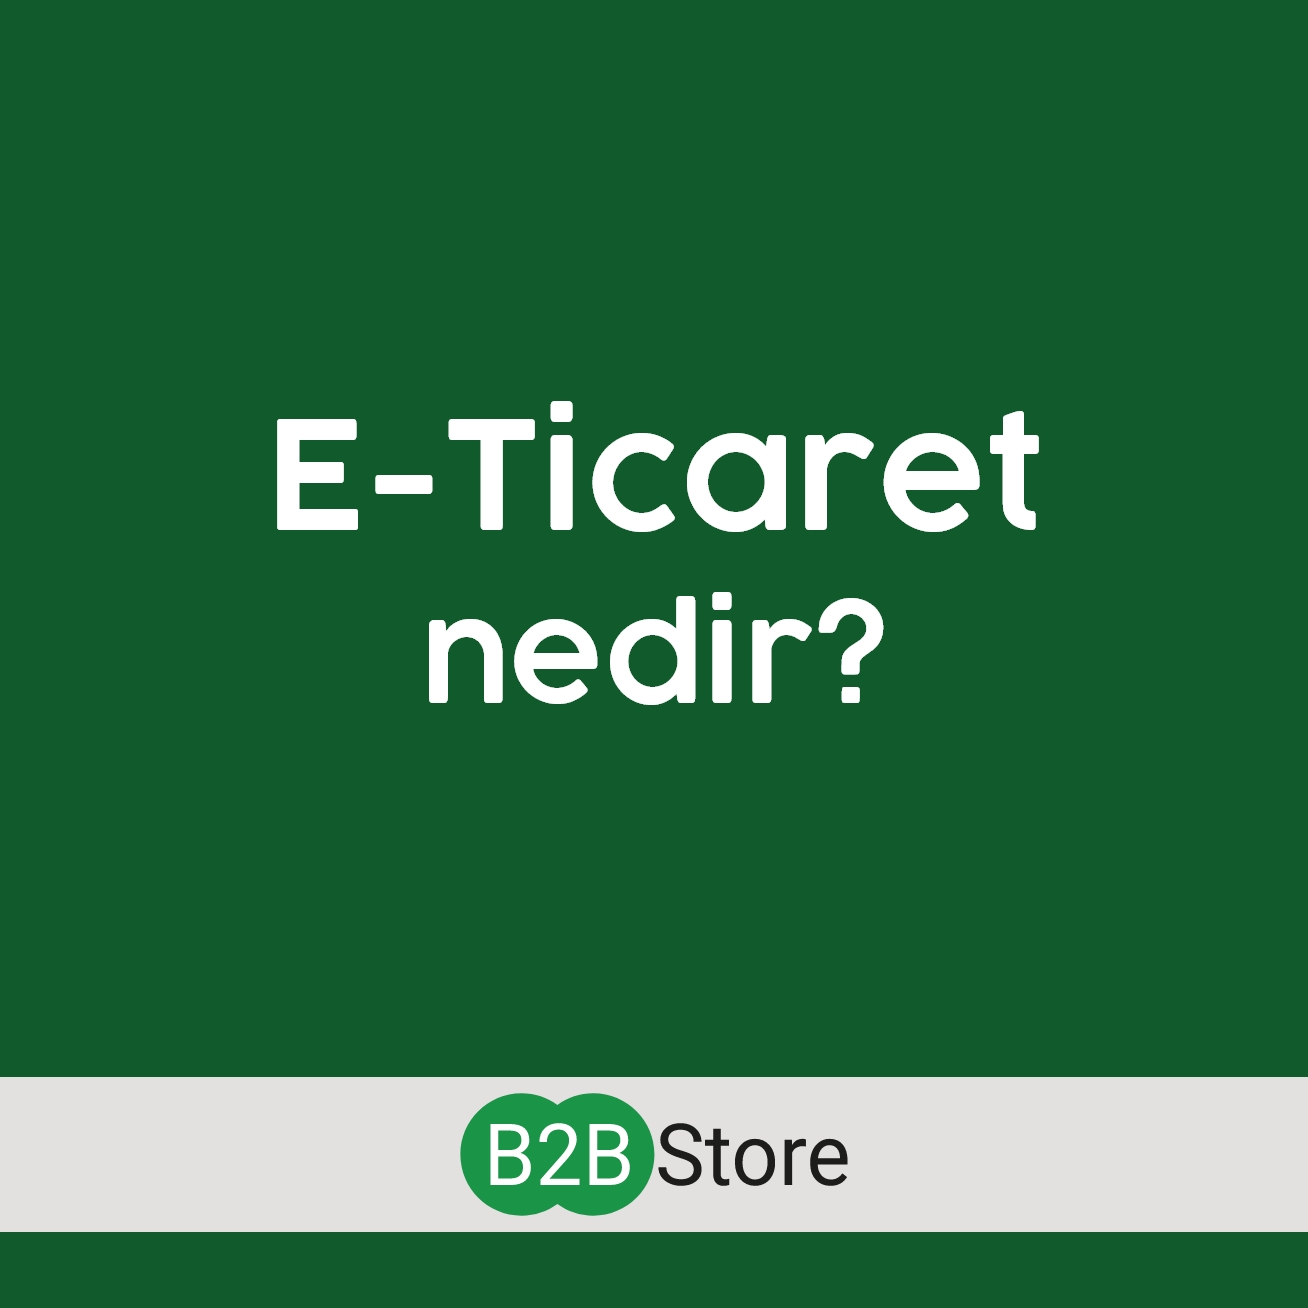 B2B Store E-Ticaret Nedir?